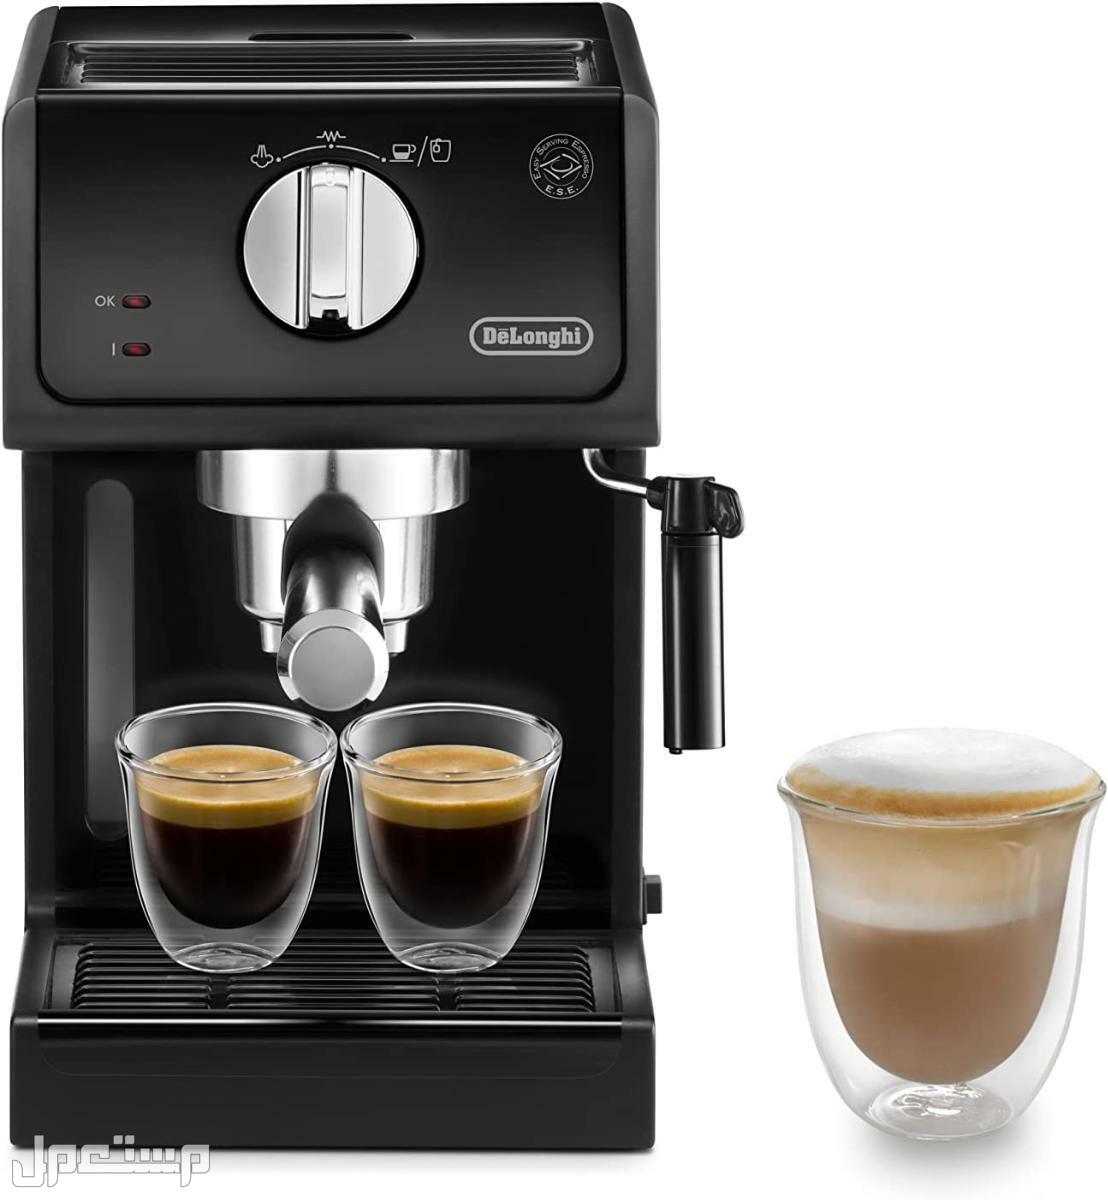 عيوب ومميزات ومواصفات وسعر ماكينة قهوة ديلونجى ديديكا في البحرين لماذا عليك شراء ماكينة قهوة ديلونجي ديديكا ؟